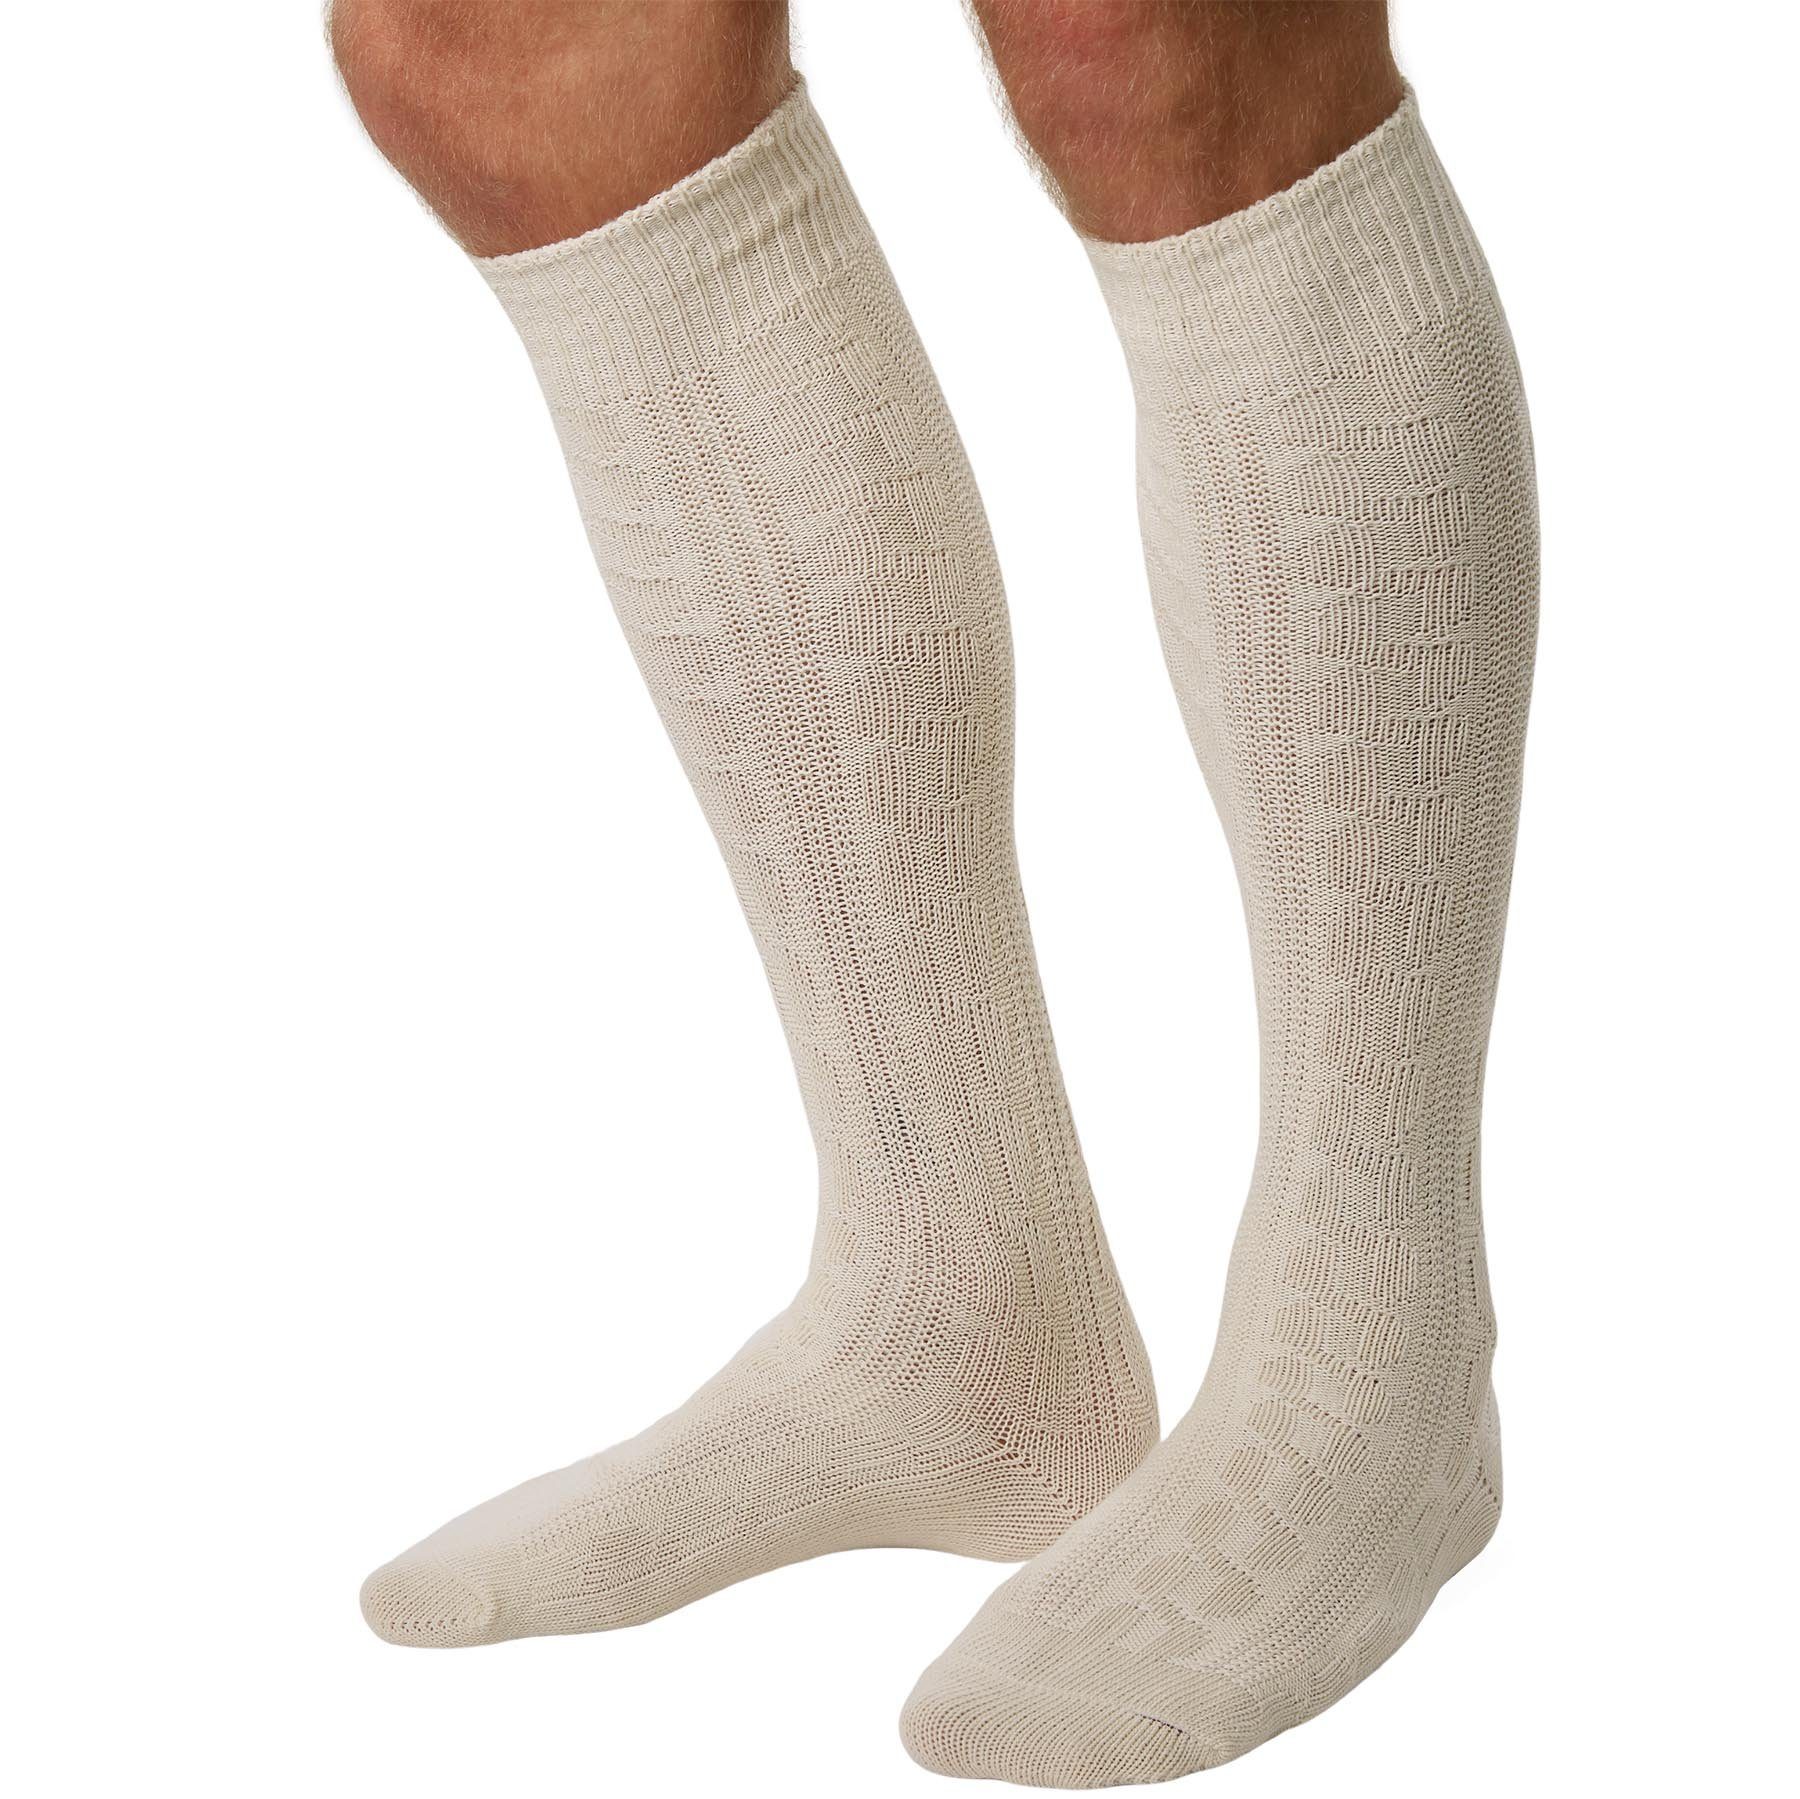 Wäsche/Bademode Socken dressforfun Socken Kniestrümpfe weiß (1-Paar)